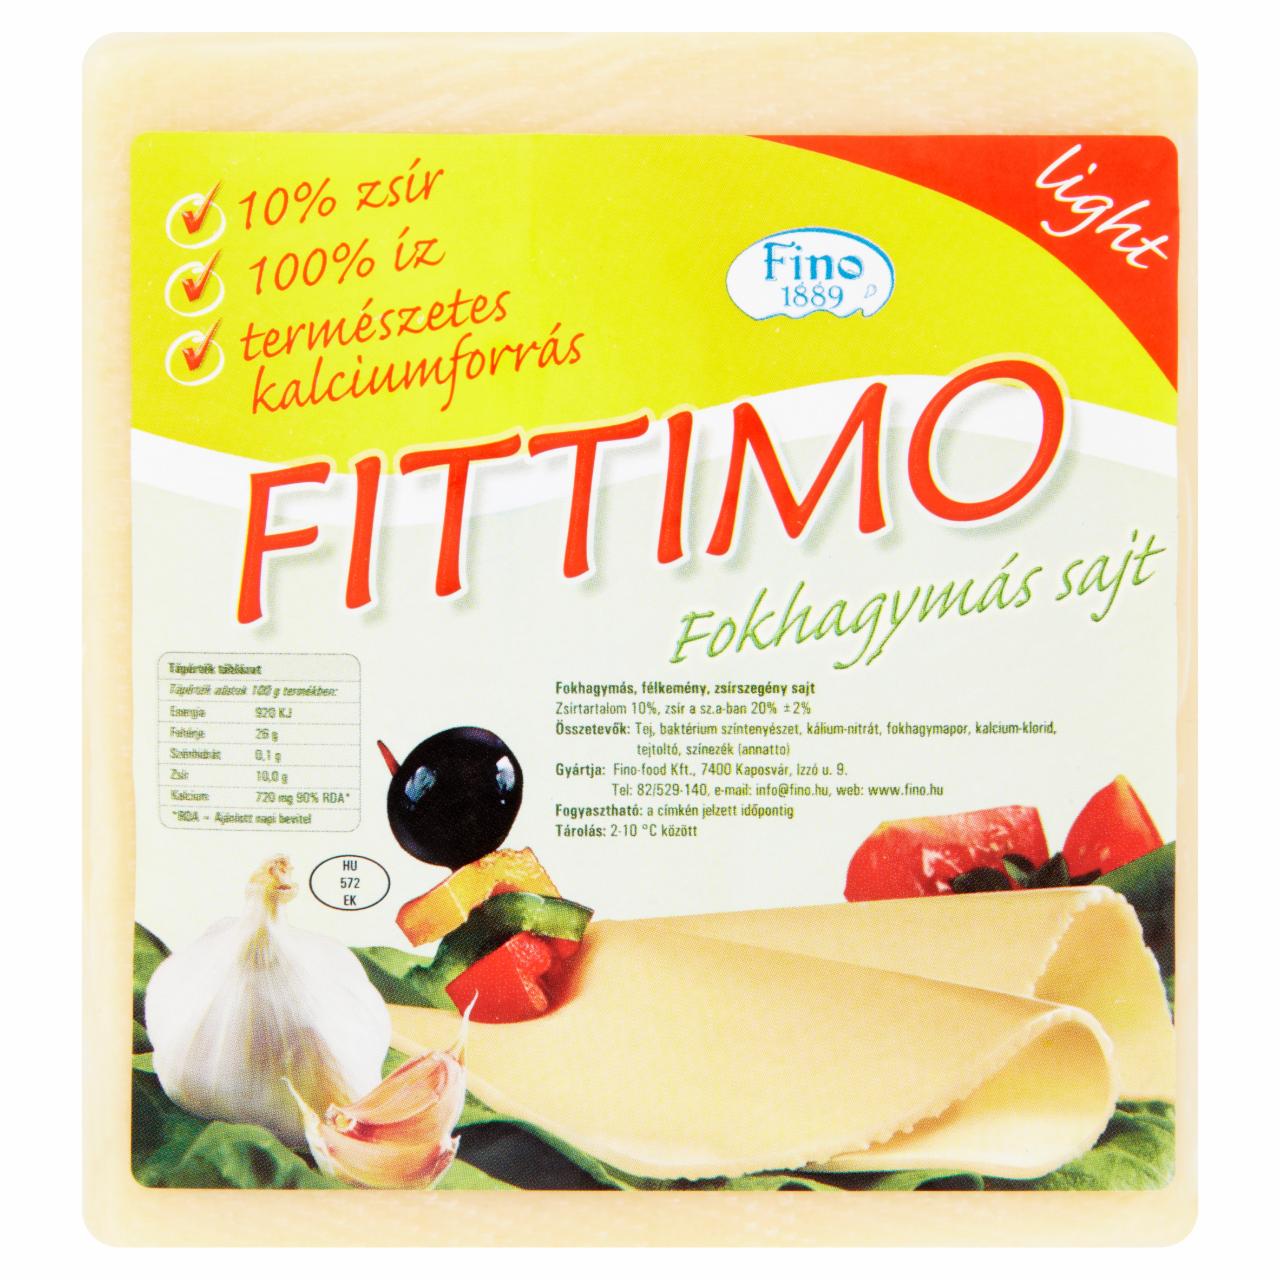 Képek - Fino Fittimo fokhagymás sajt